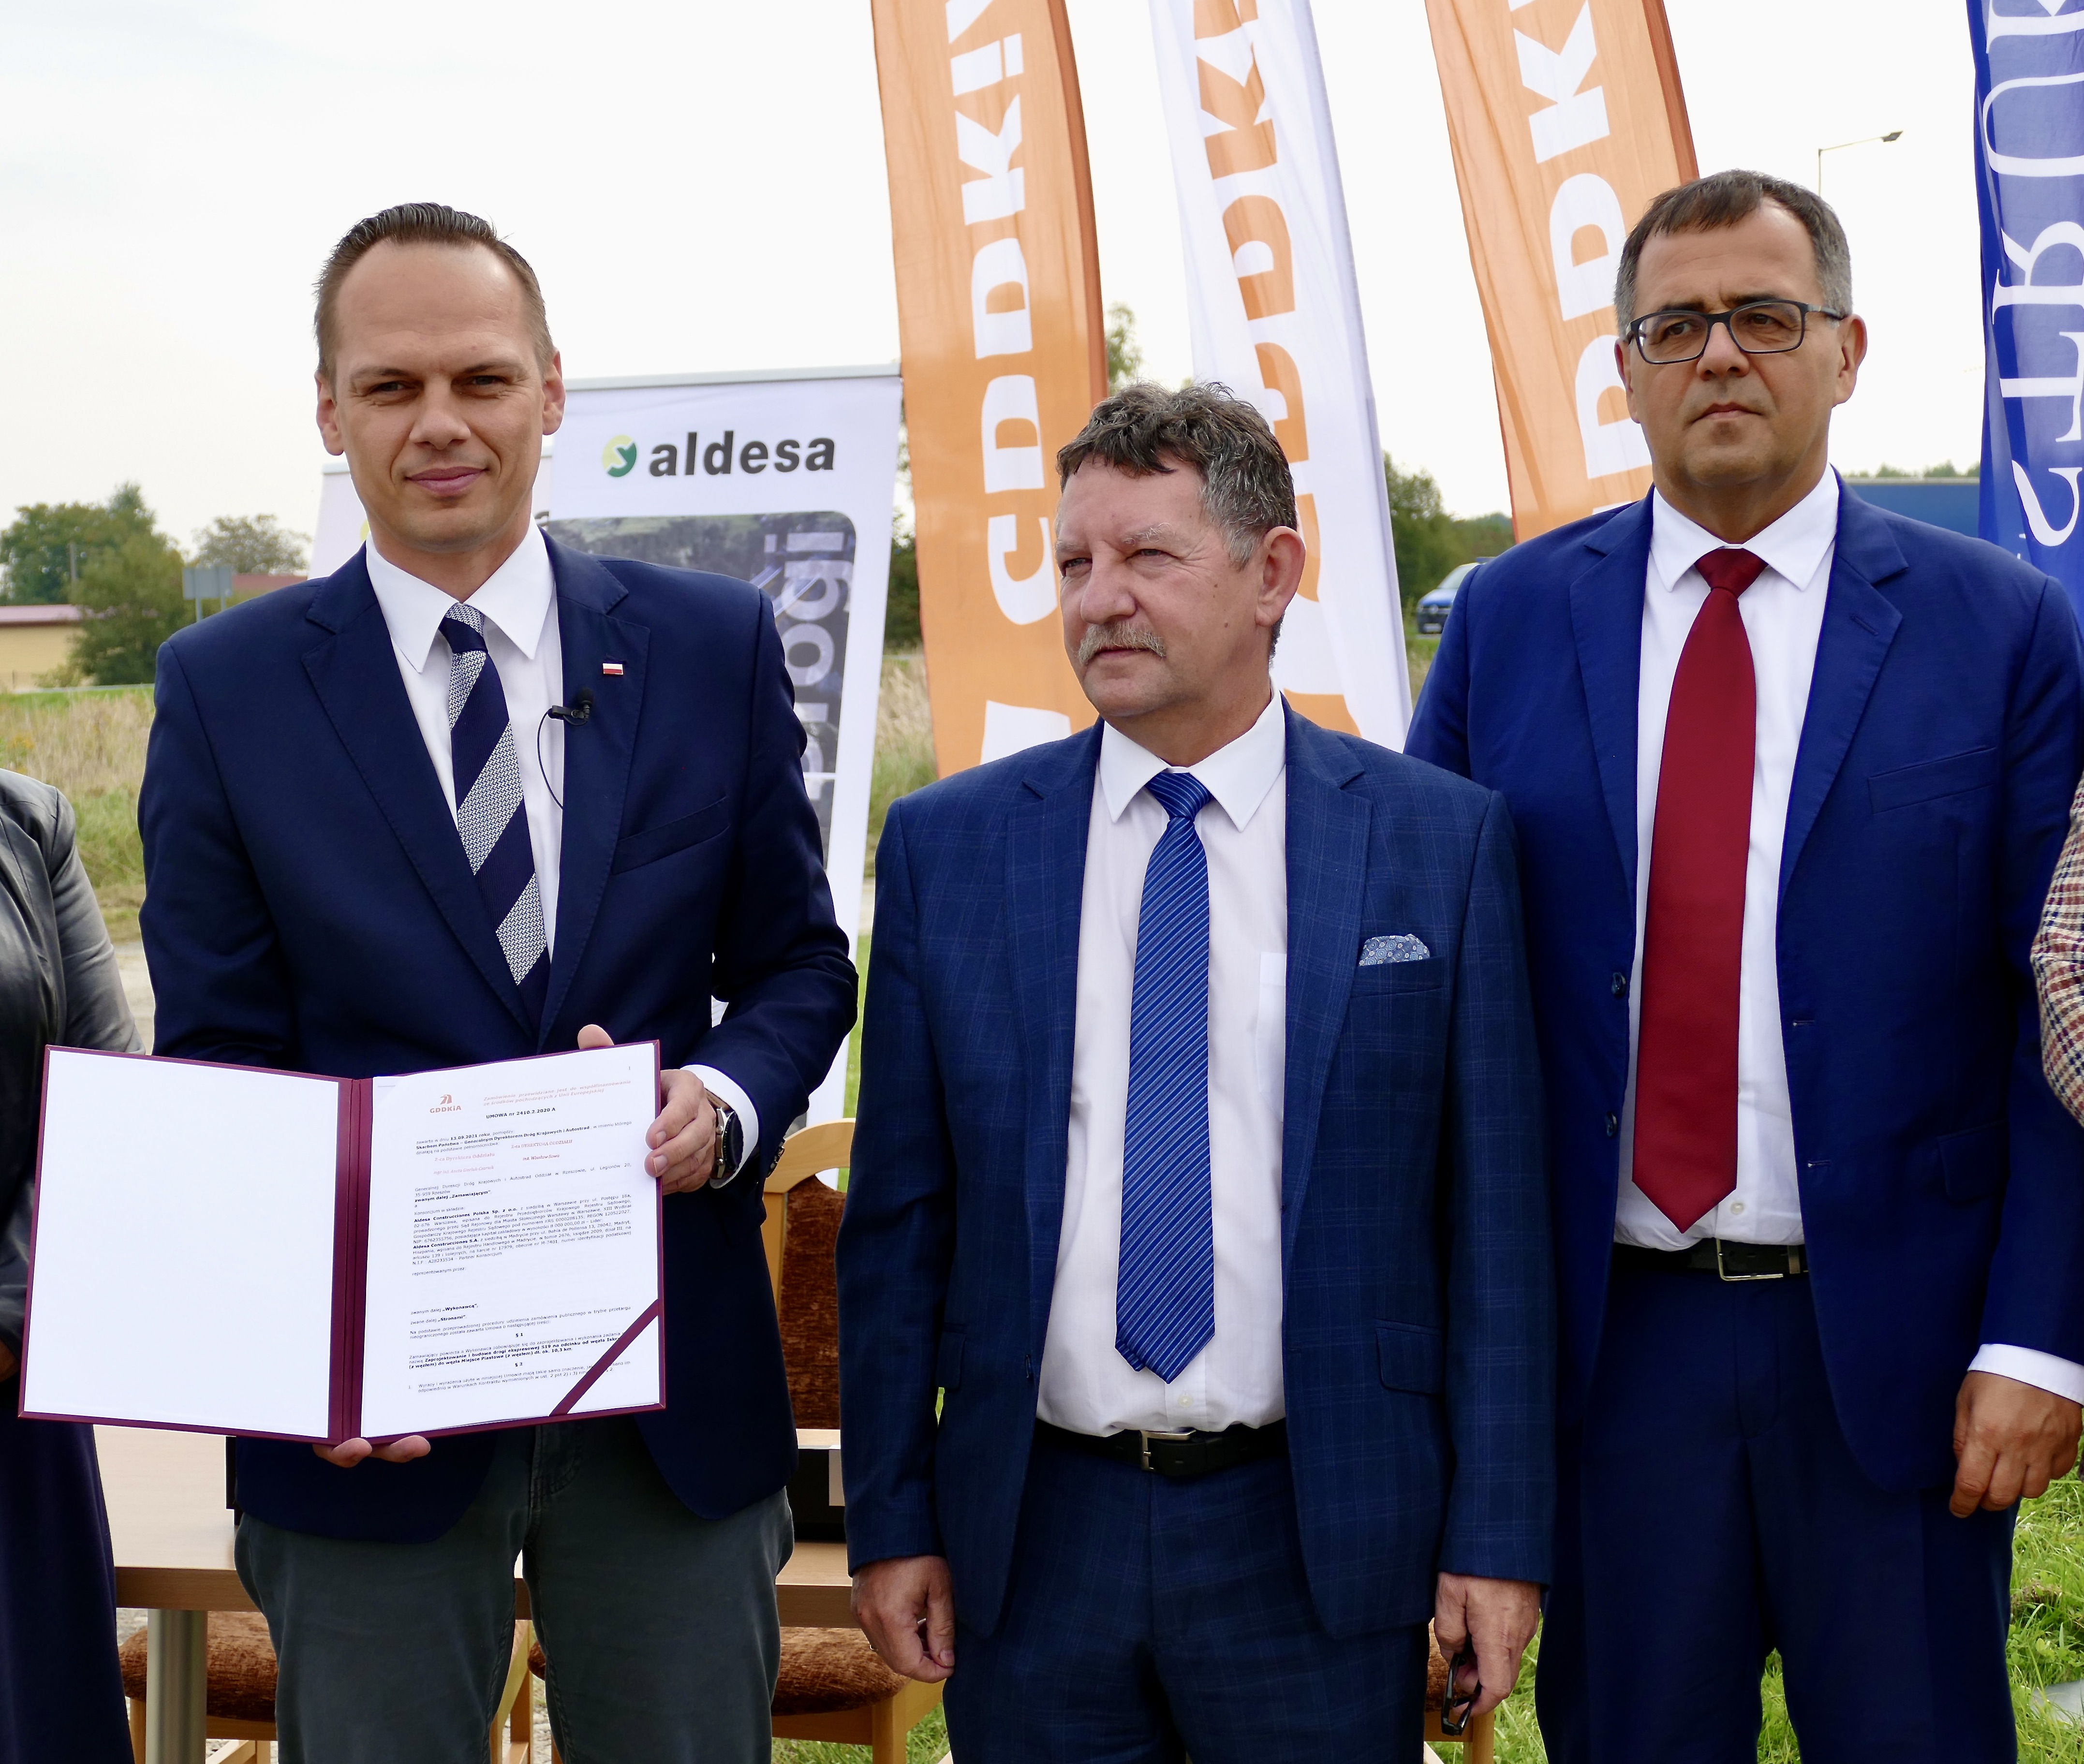 Aldesa - Spoločnosť Aldesa podpísala zmluvu s poľským Generálnym riaditeľstvom pre národné cesty a diaľnice na výstavbu rýchlostnej cesty S19 medzi obcami Iskrzynia a Miejsce Piastowe